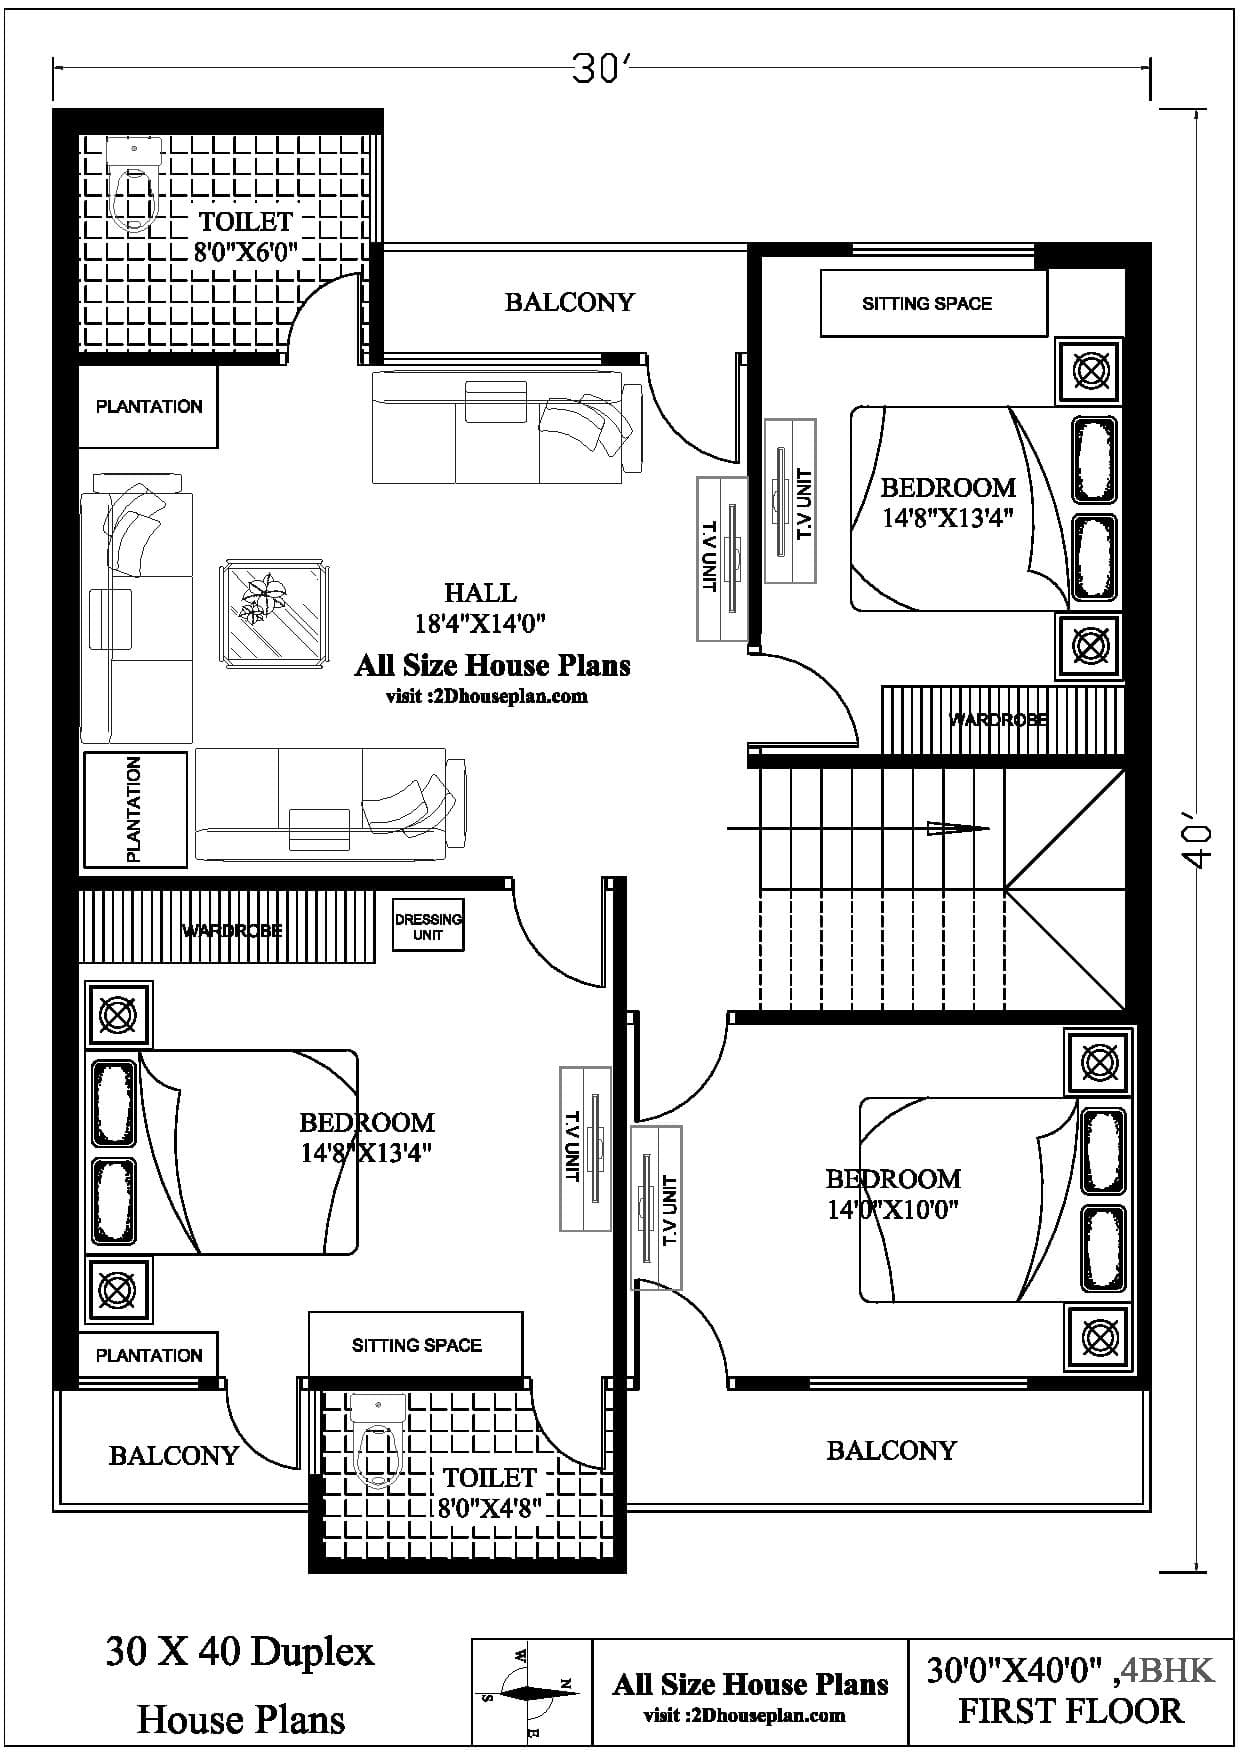 30X40 Duplex House Plans